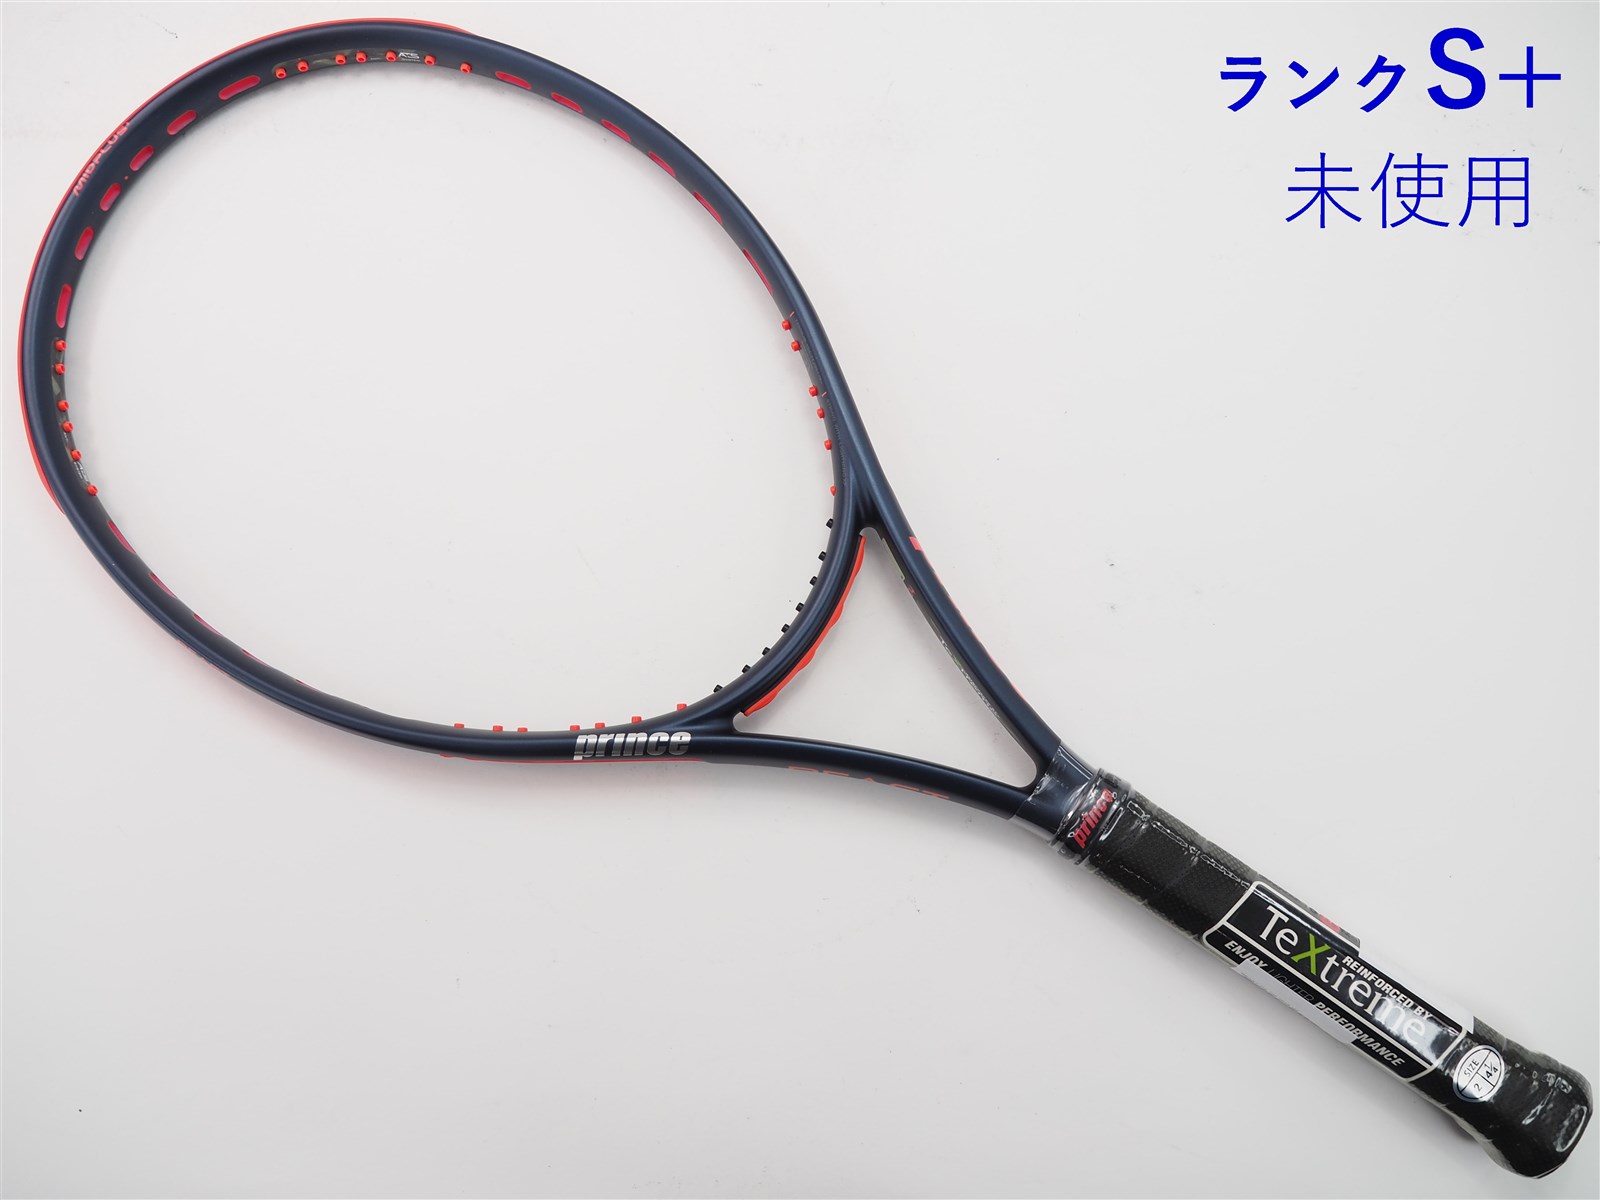 テニスラケット プリンス ビースト オースリー 104 2019年モデル (G2